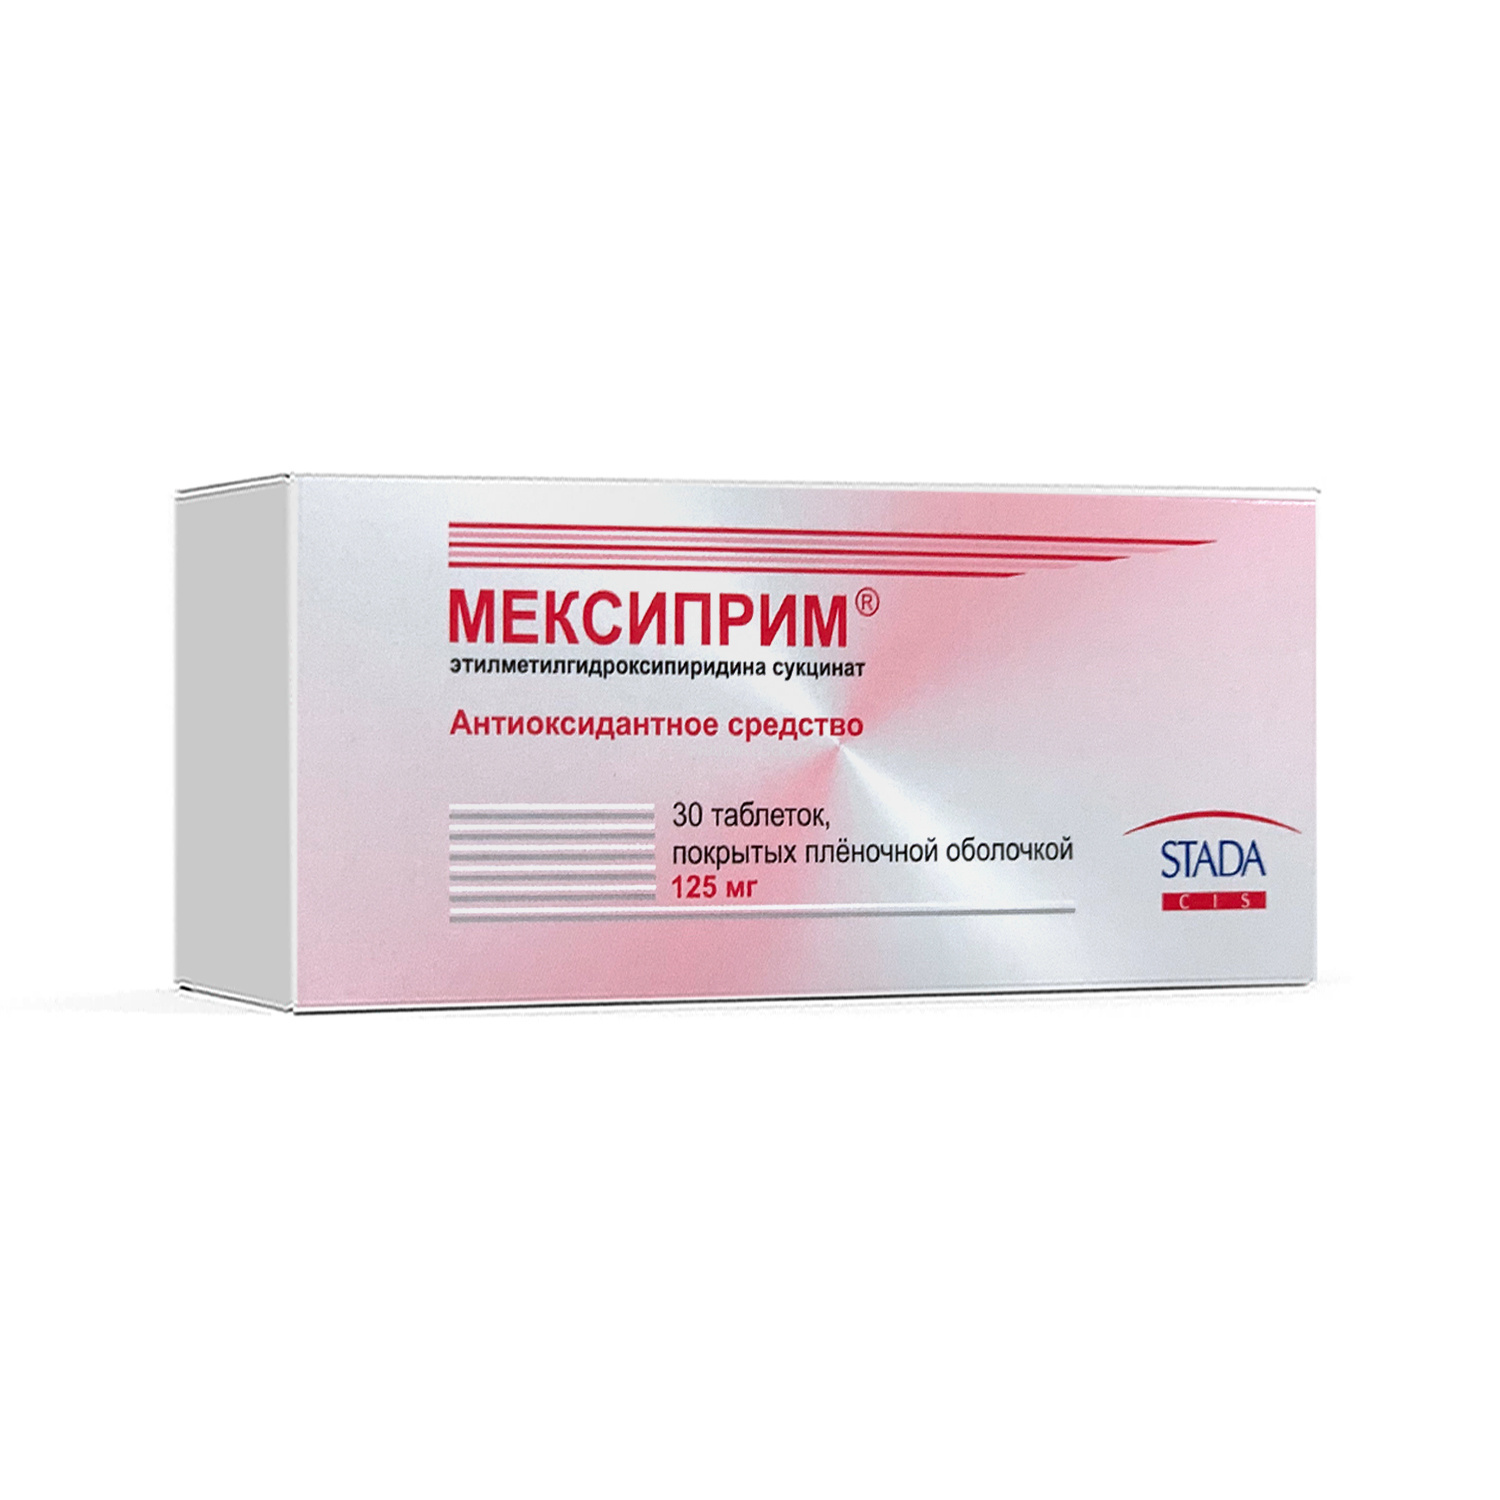 Meksiprim 125 mg tab №30 (Nijfarm)